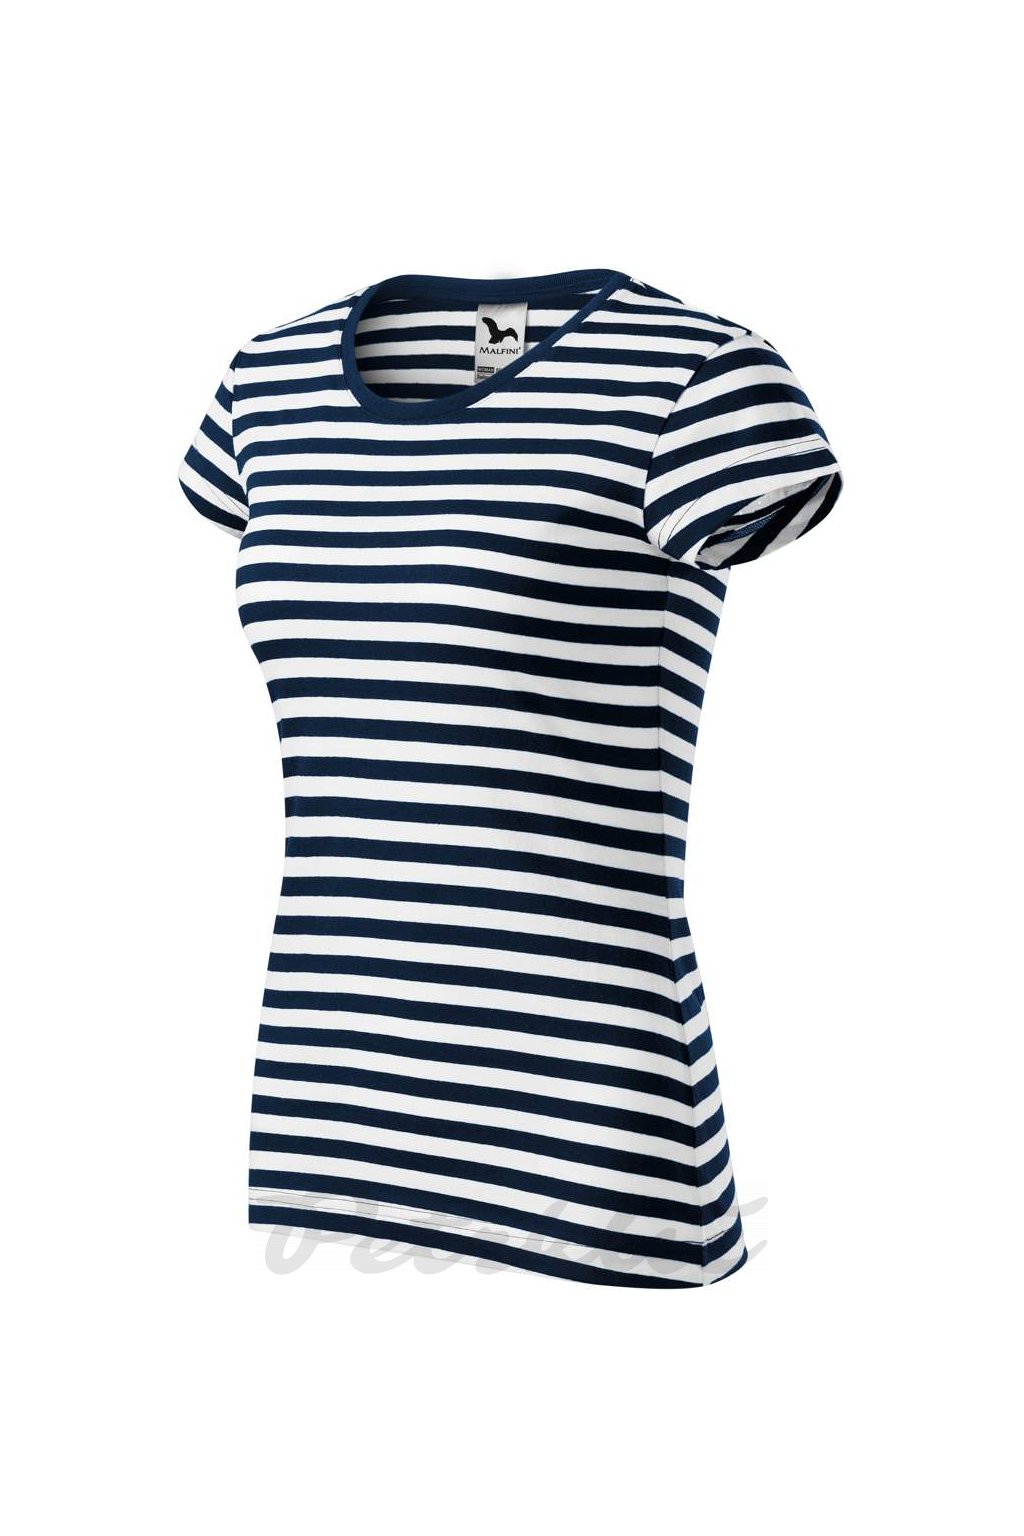 Dámské námořnické pruhované tričko Sailor, 100% bavlna 150 g/m² -  petrklic.cz